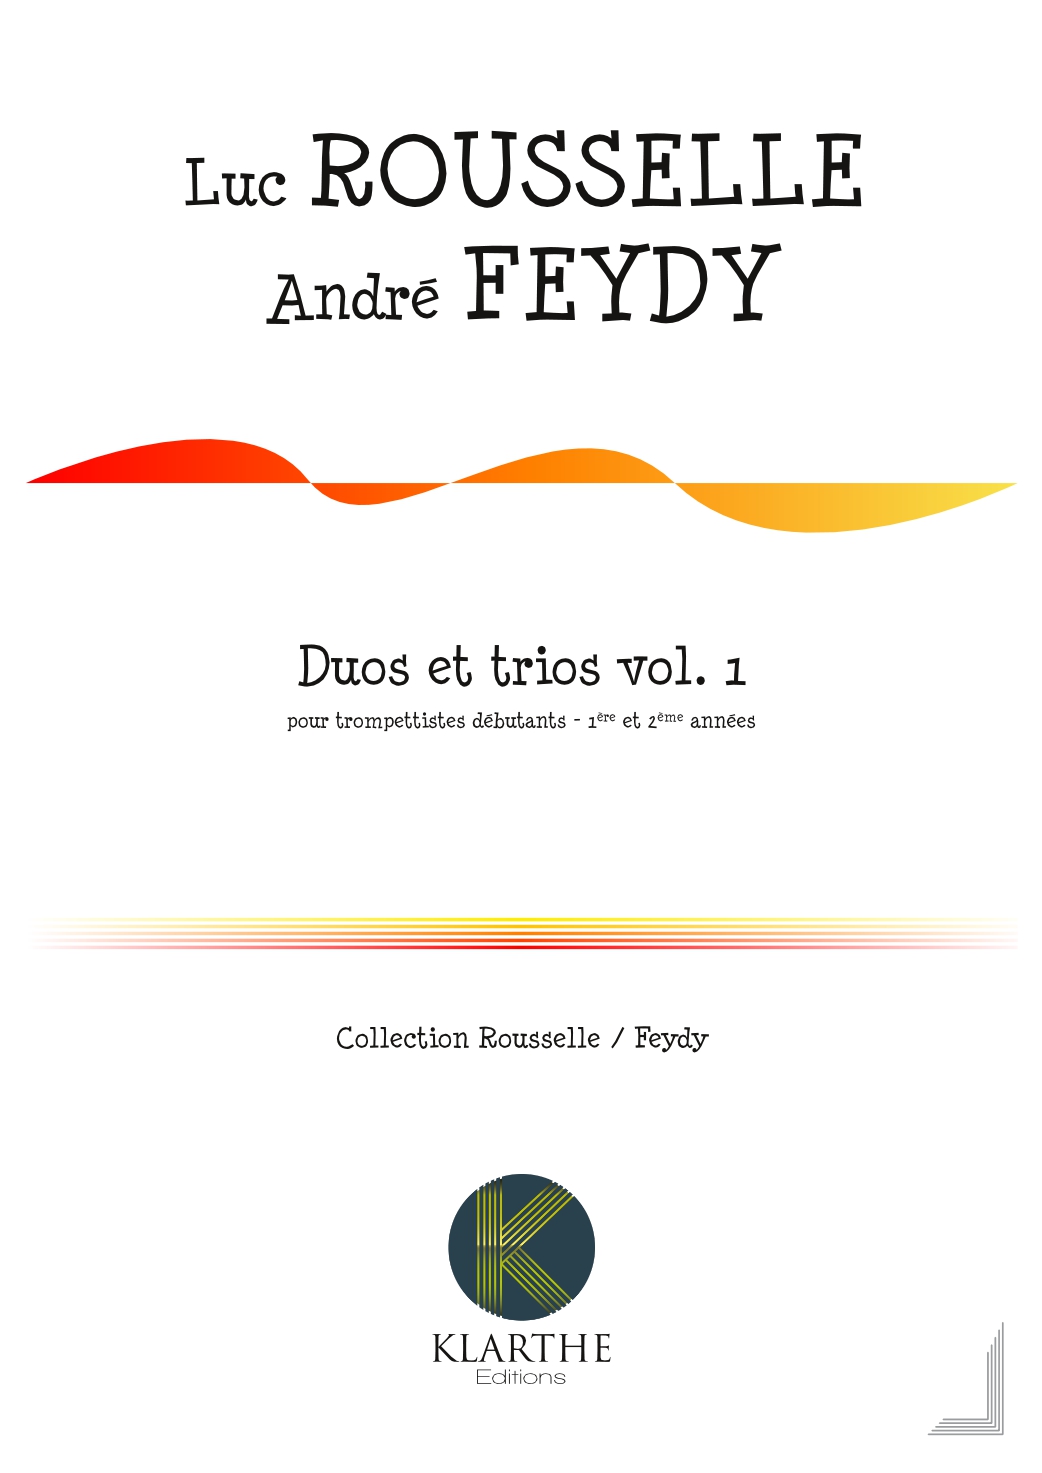  Duos et trios pour trompettistes d�butants, Vol.1(FEYDY ANDRE / ROUSSELLE LUC)